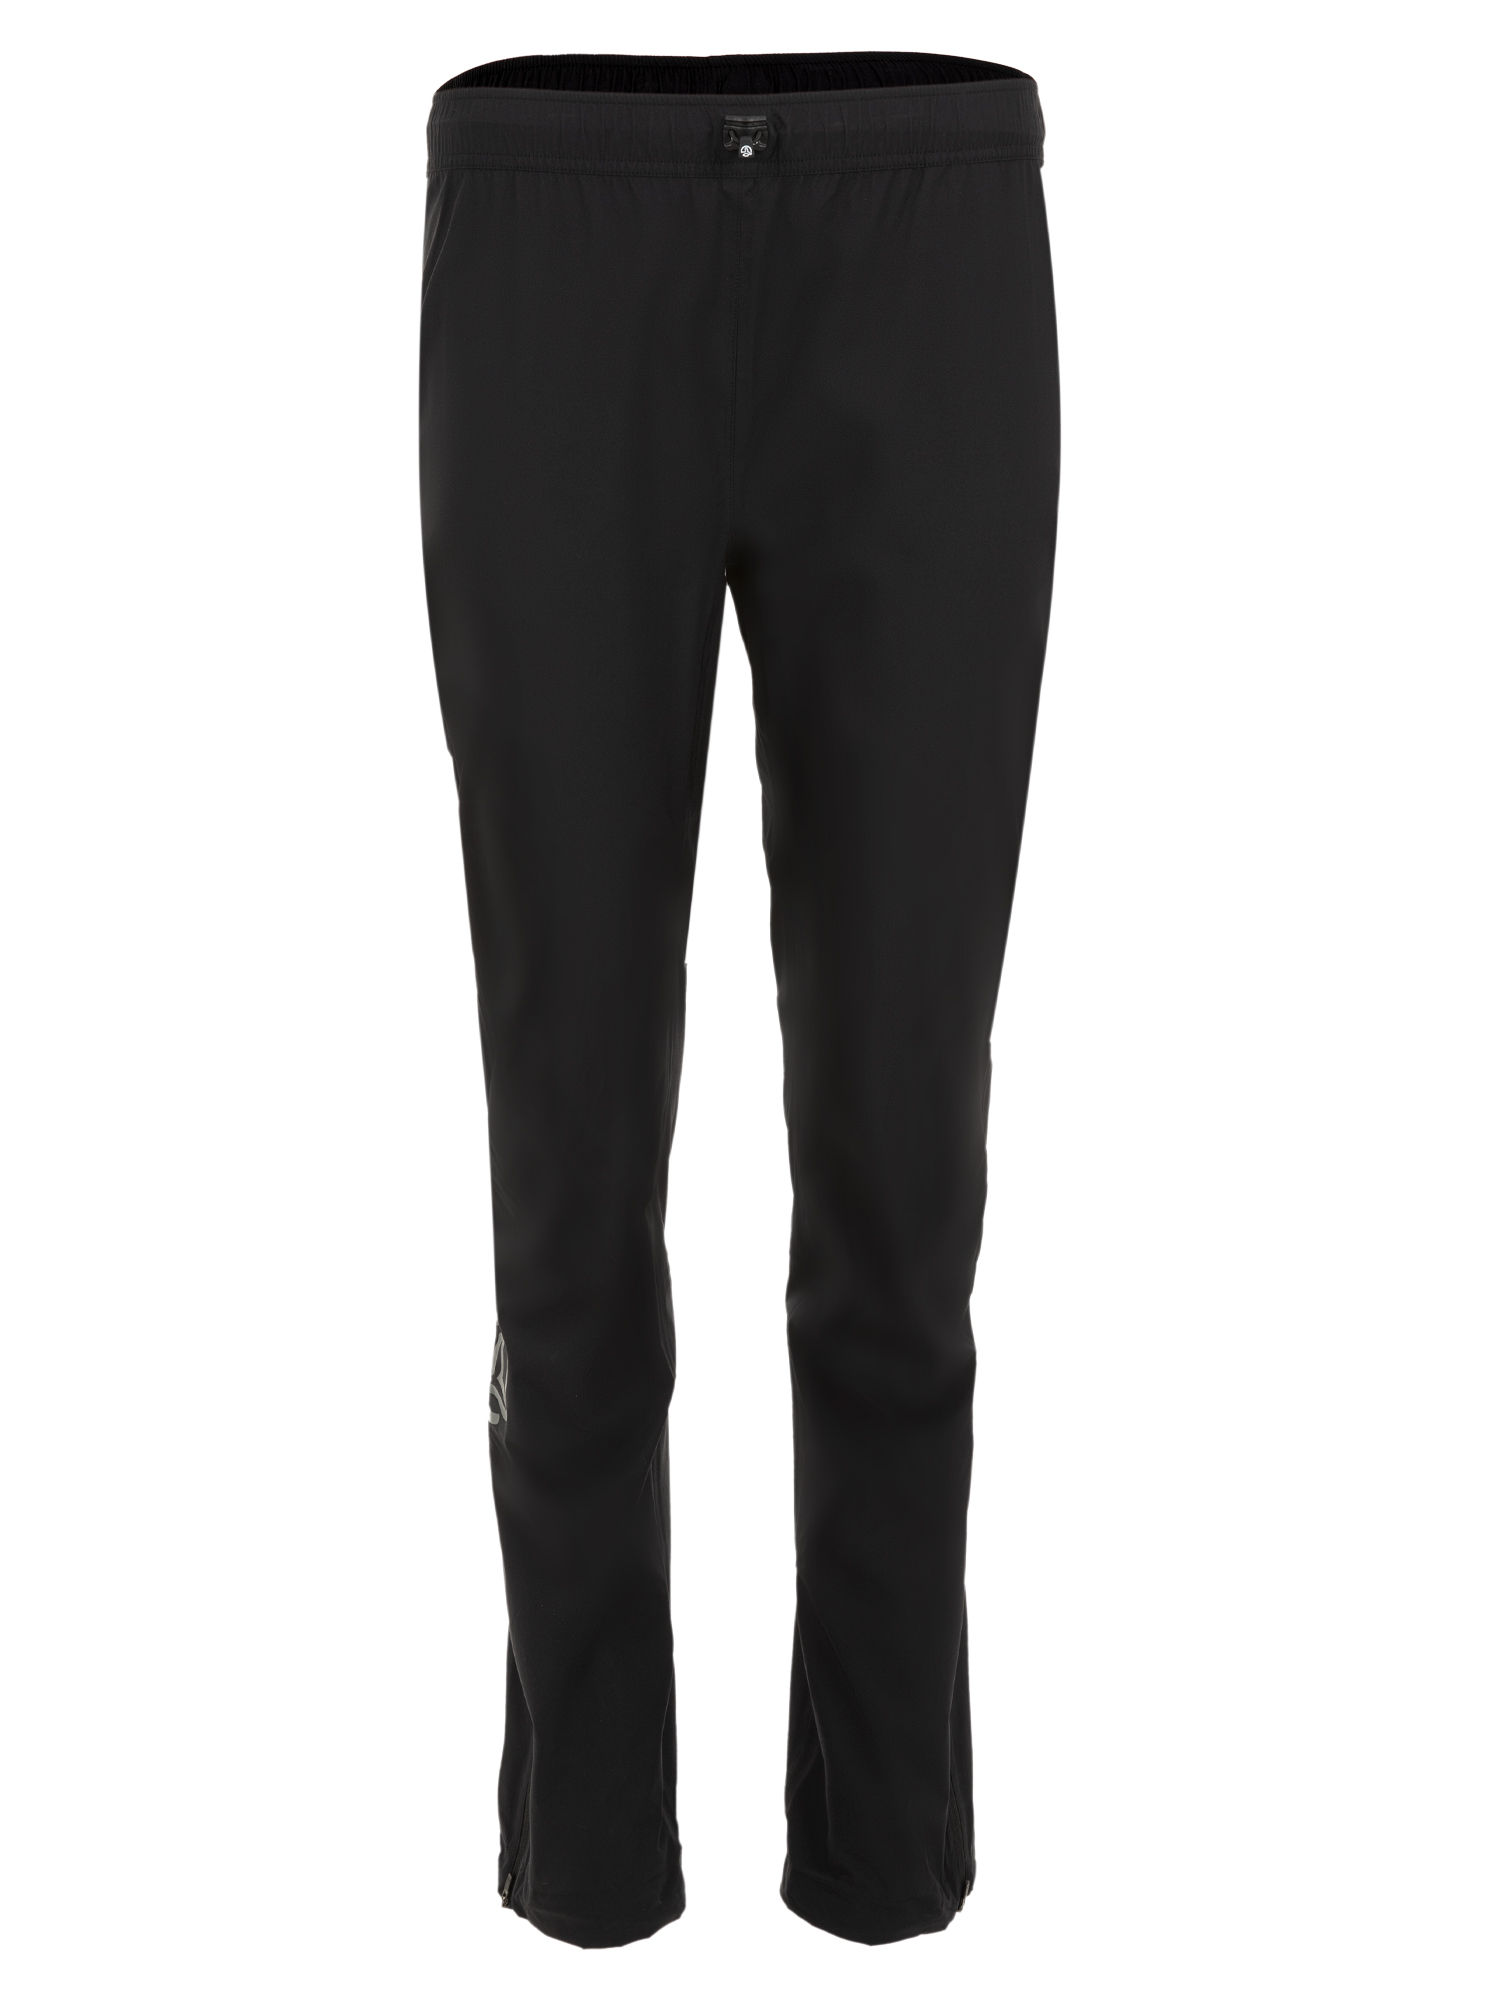 Спортивные брюки женские Ternua Cyclone Pt W черные L